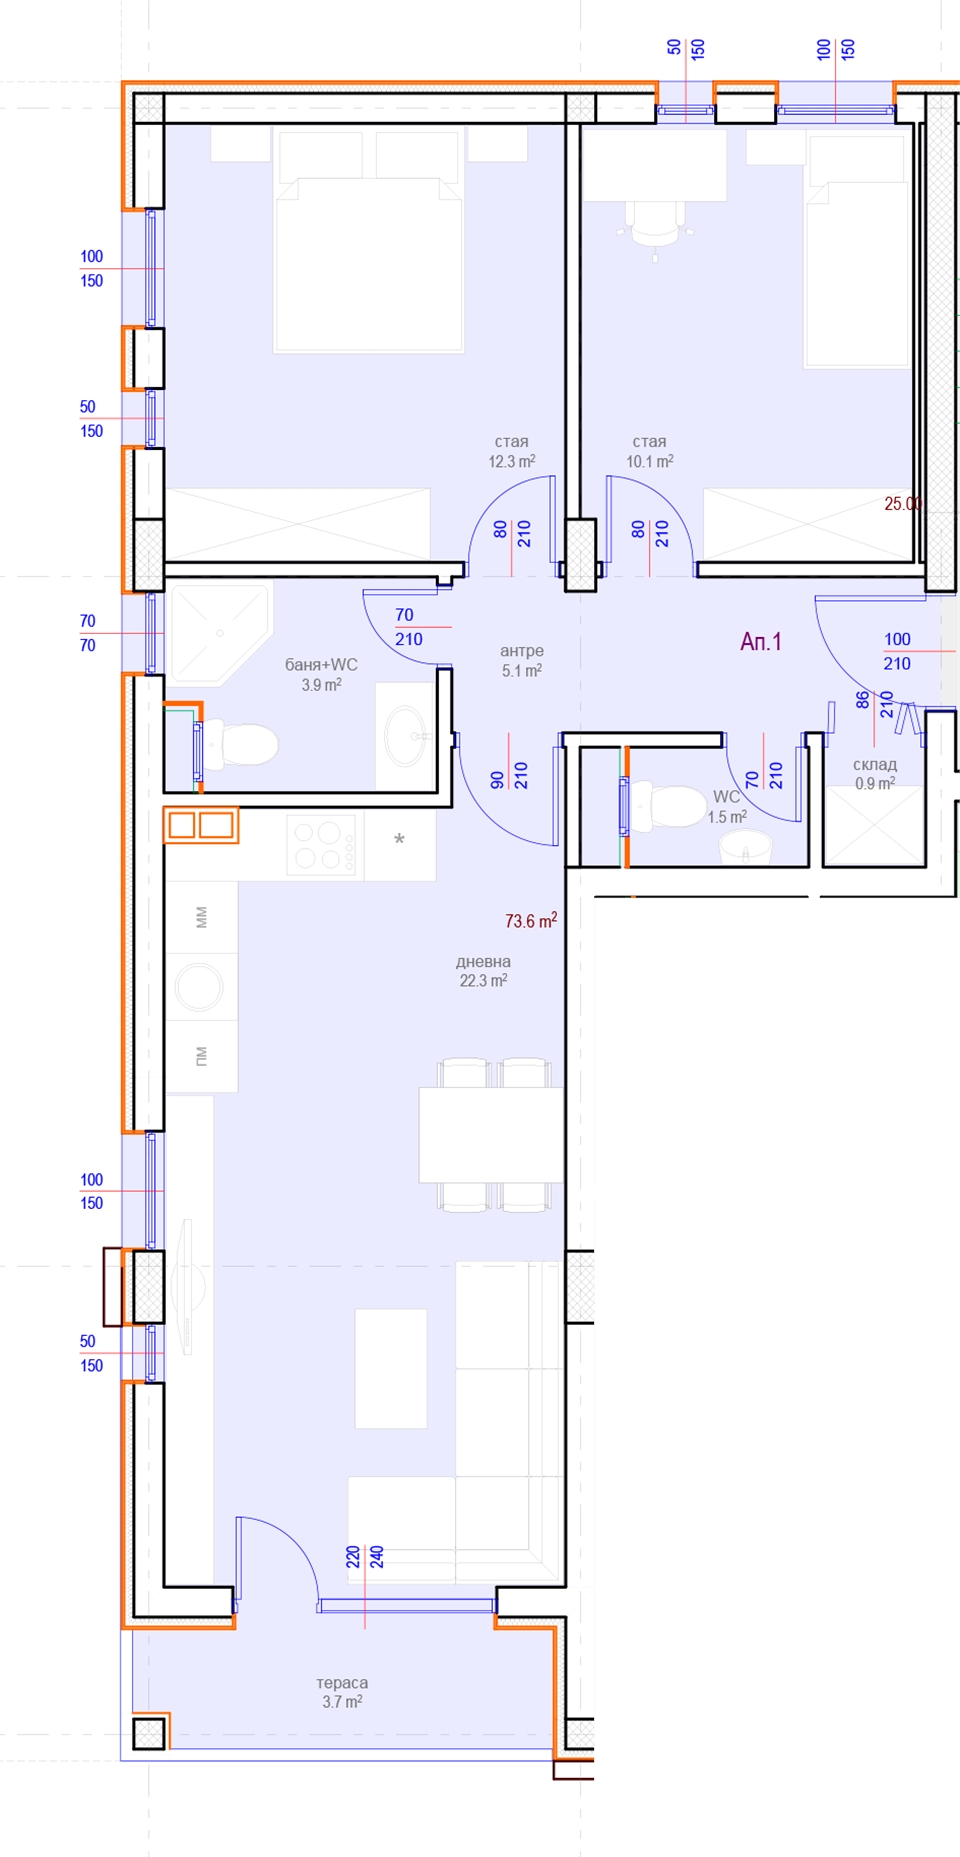 Апартамент № 1, Вход А, 1 етаж, Изложение С-З-Ю